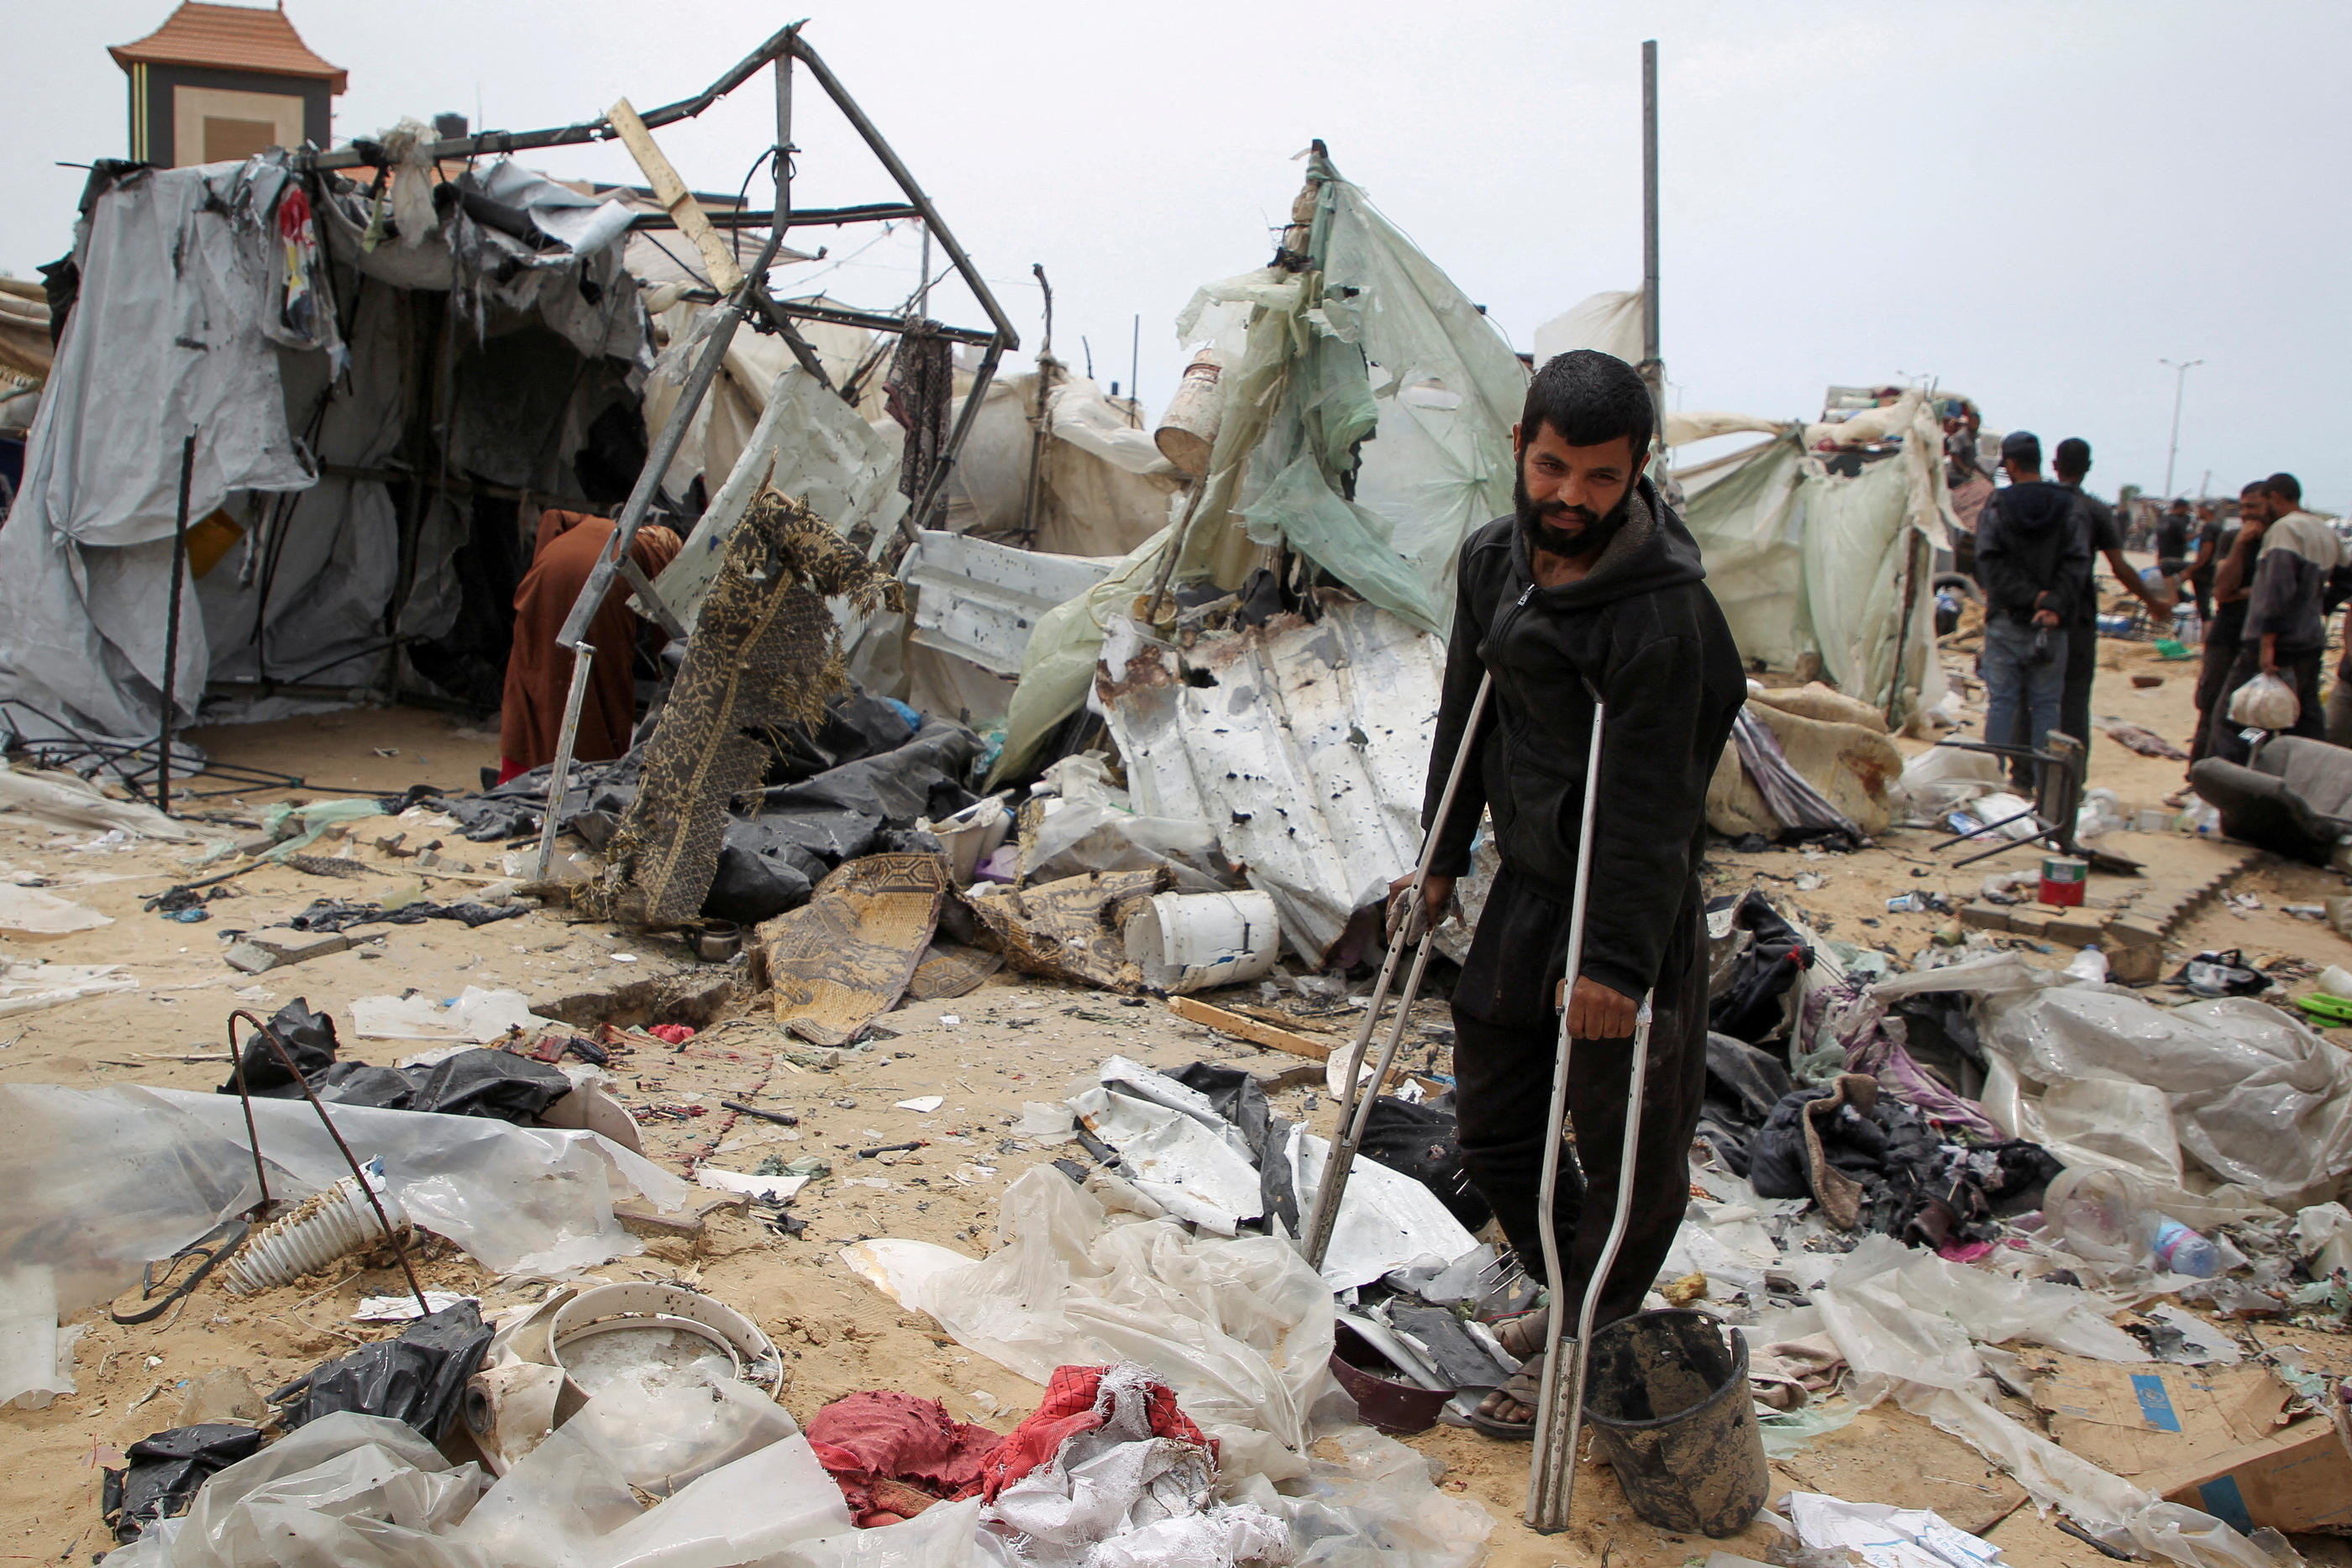 Une frappe israélienne a fait 45 morts dimanche dans un camp de réfugiés près de Rafah, selon un bilan du Hamas. Reuters/ Hatem Khaled